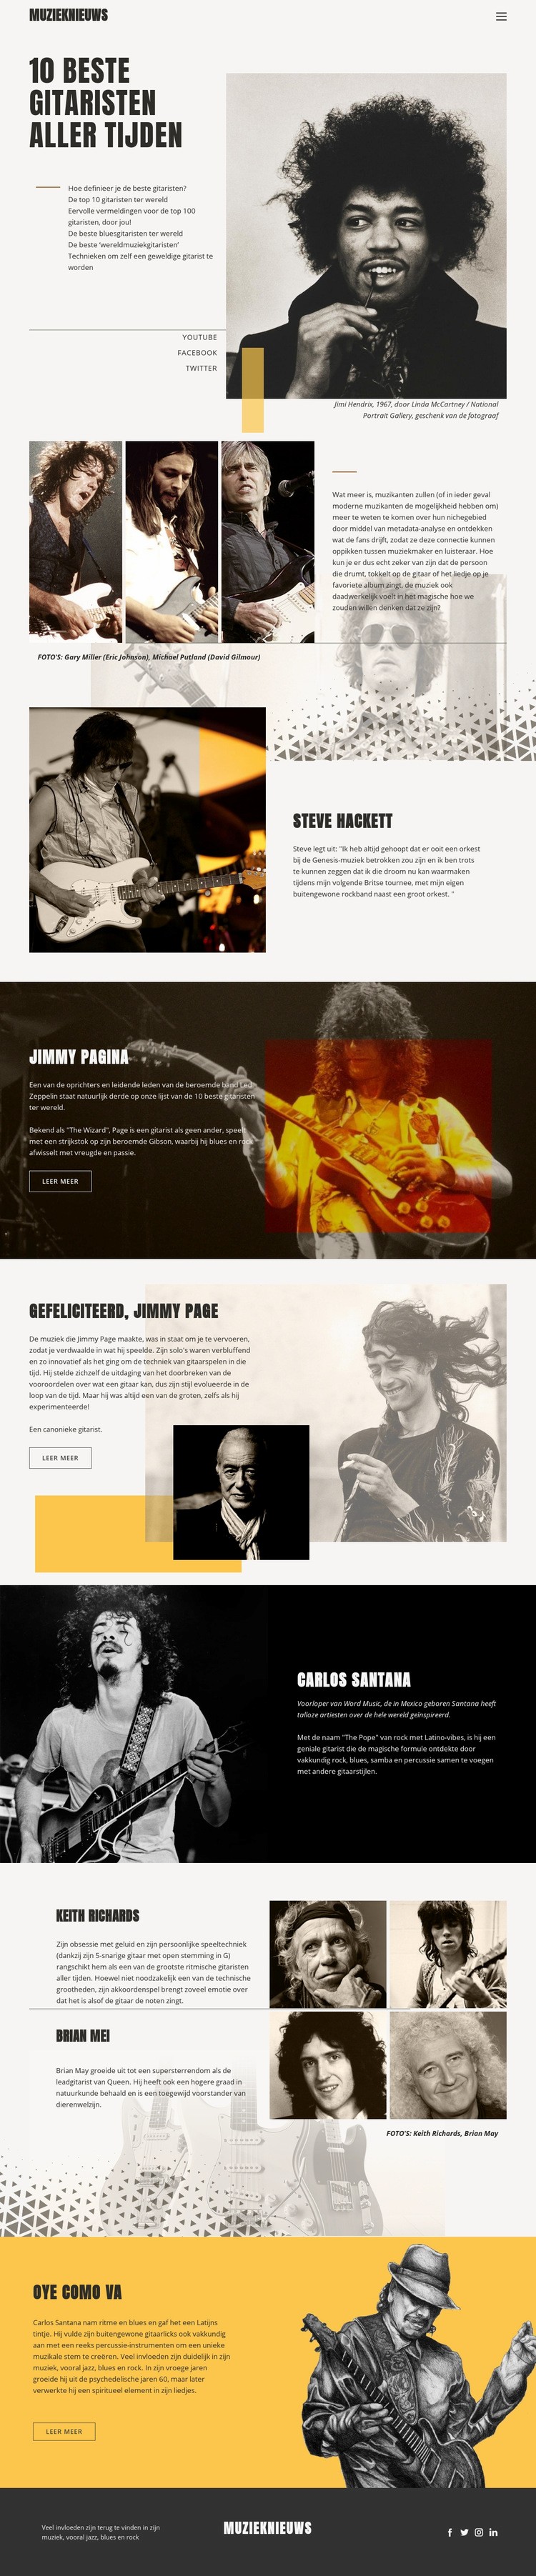 De beste gitaristen Website ontwerp